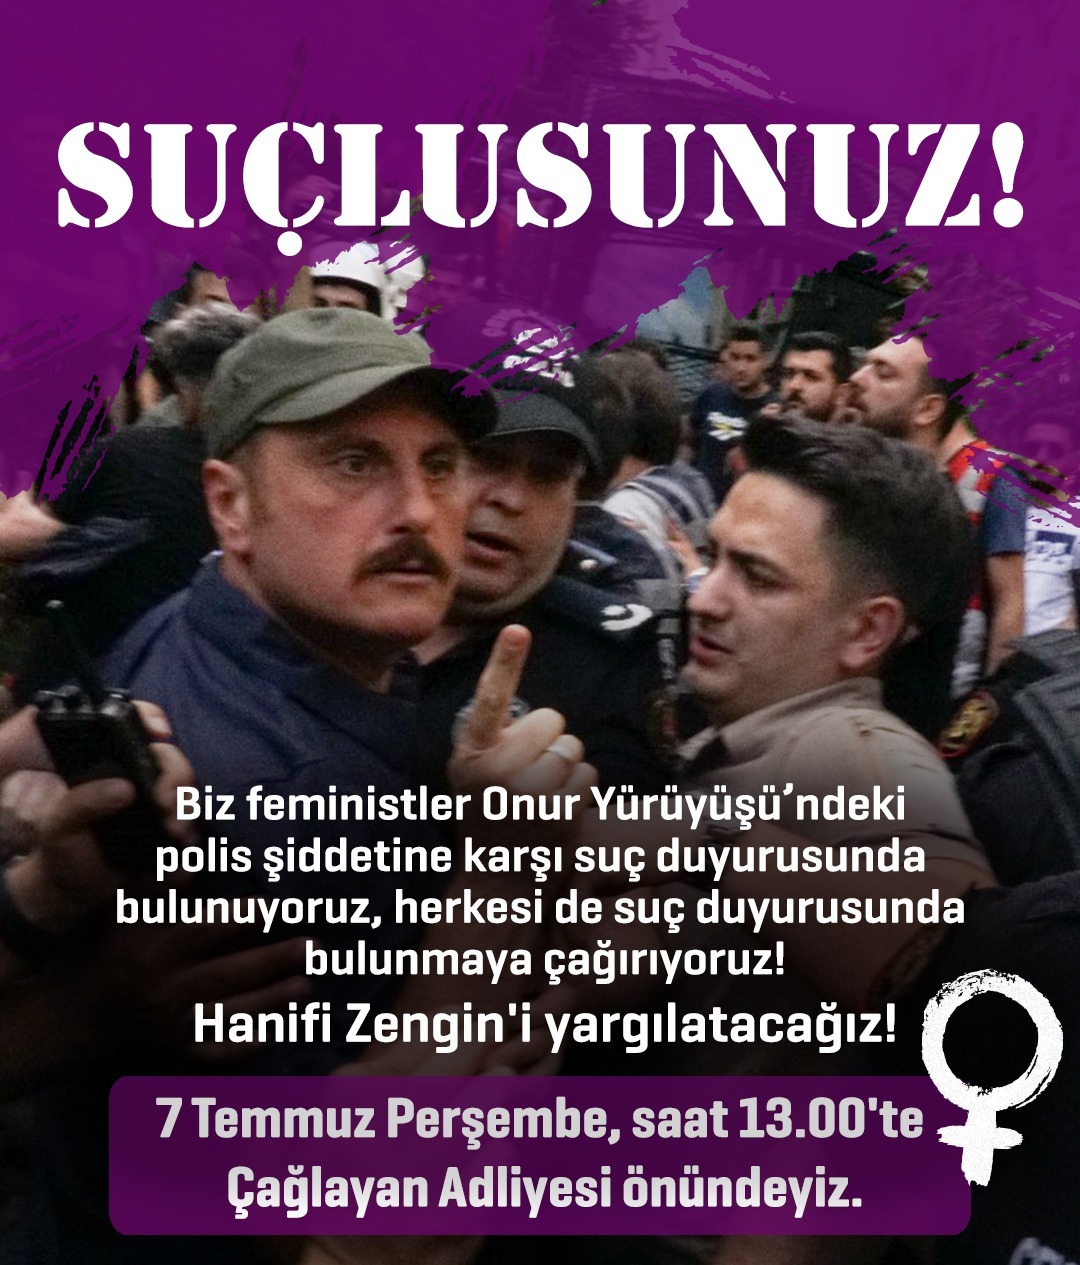 feministler-istanbul-onur-yuruyusu-ndeki-polis-siddetine-karsi-suc-duyurusunda-bulunacak-1